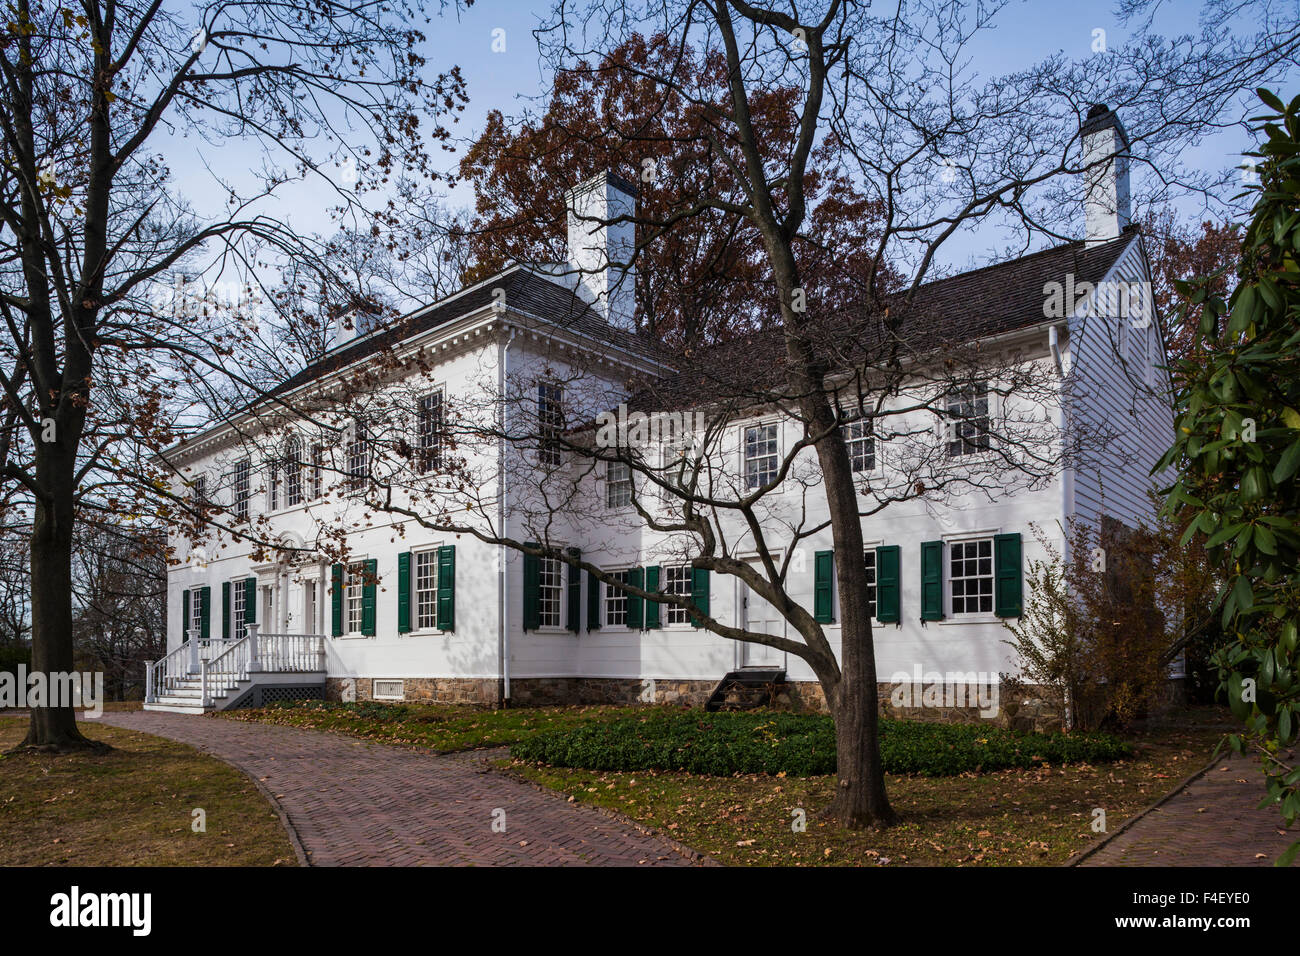 USA, New Jersey, Morristown, Parc historique national de Morristown, Ford Mansion, siège de George Washington pendant la Révolution américaine Banque D'Images